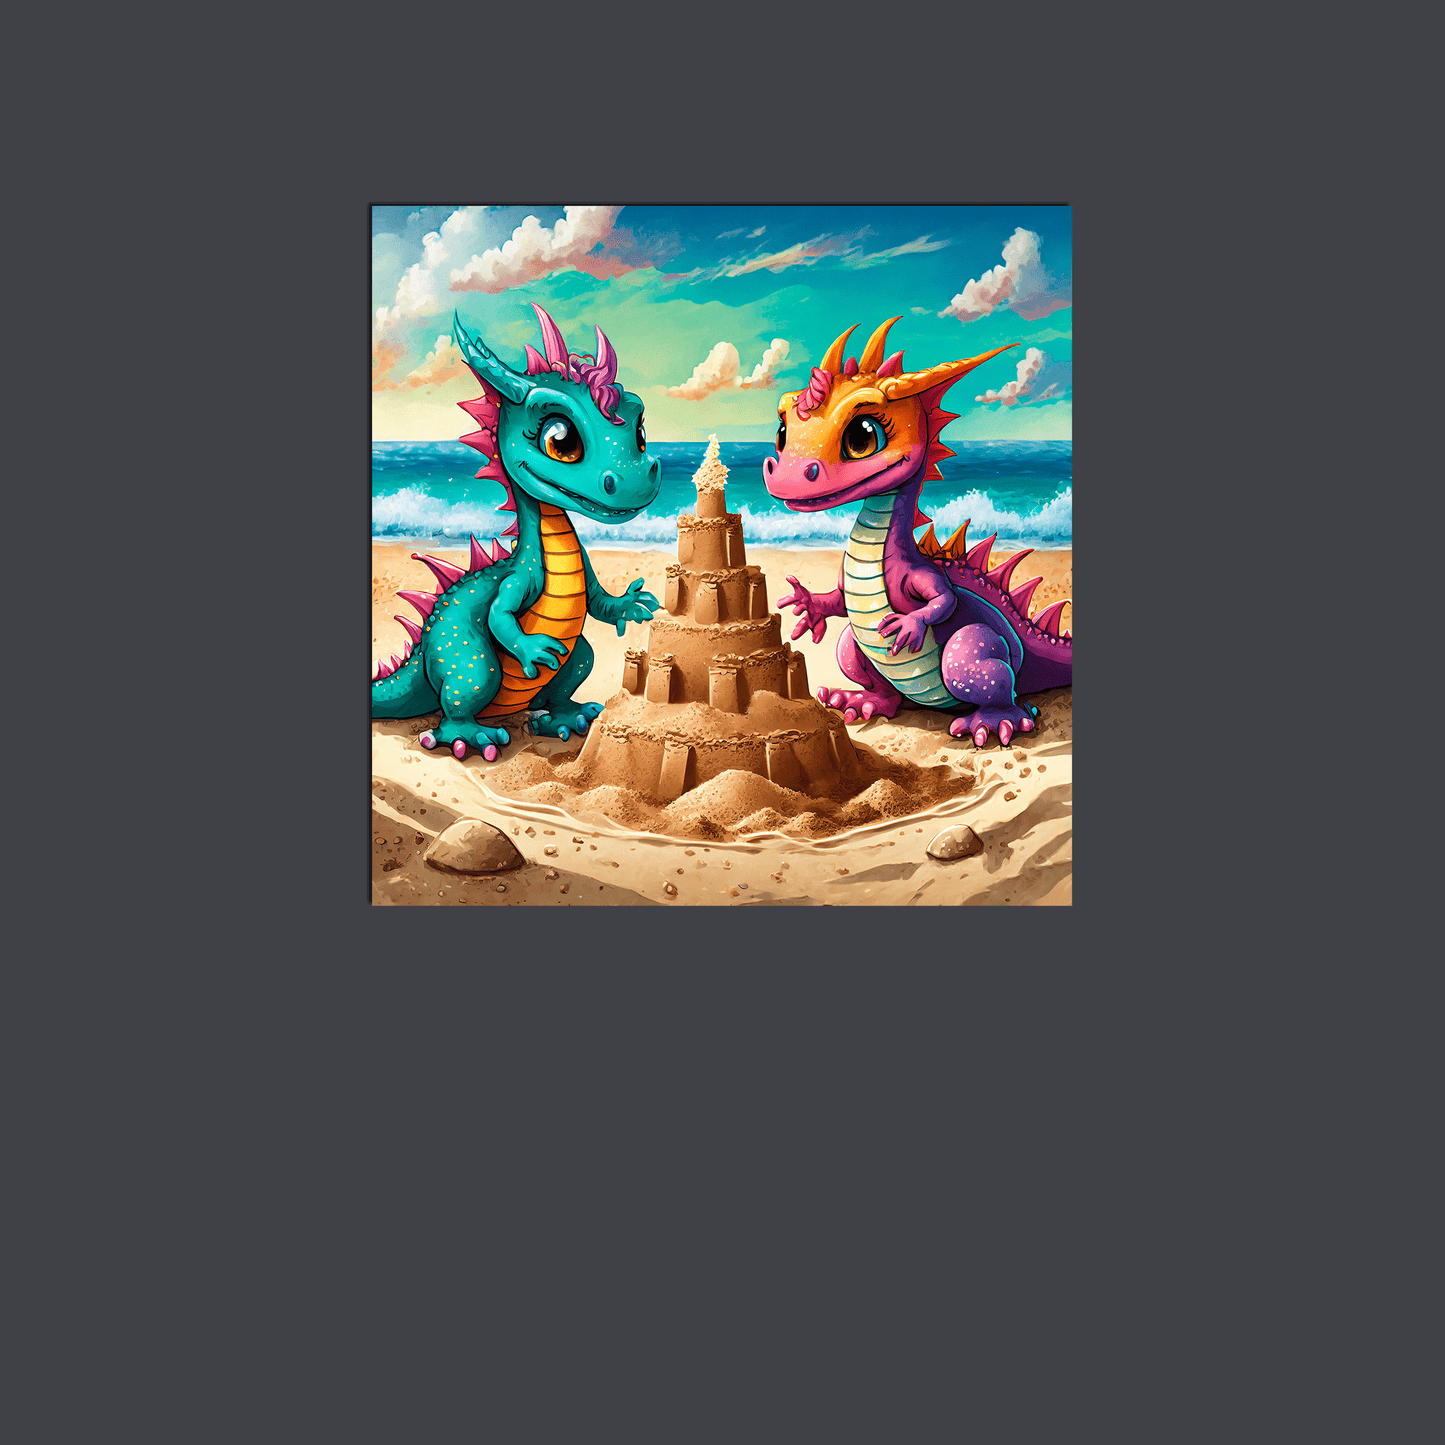 Baby Dragons at the Beach - Metal Poster - Premium Metal Print